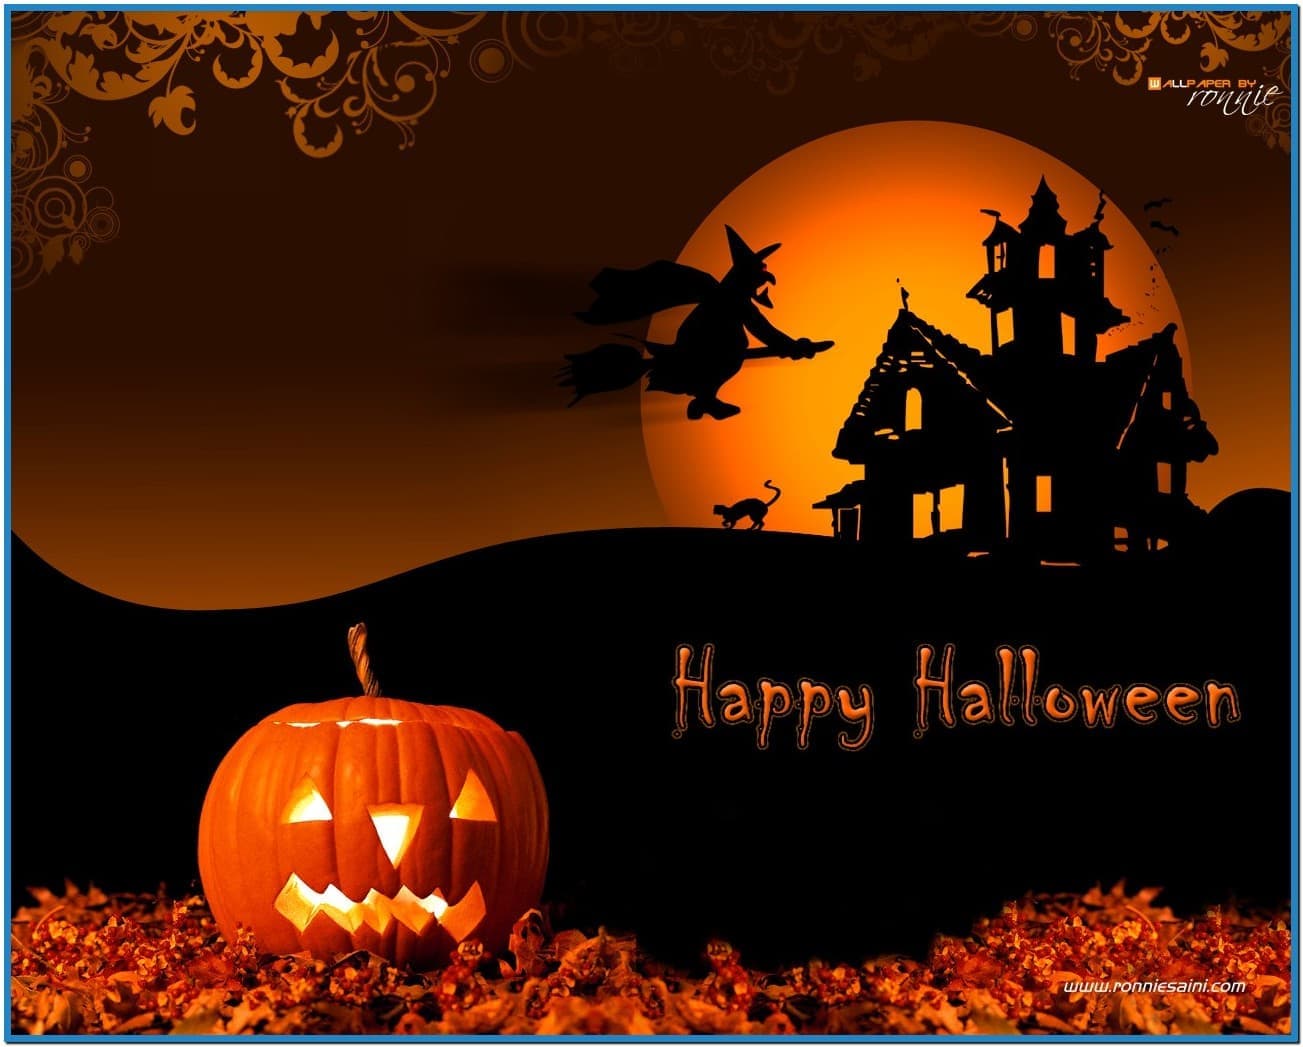 Halloween wallpaper screensavers   Download 1303x1047